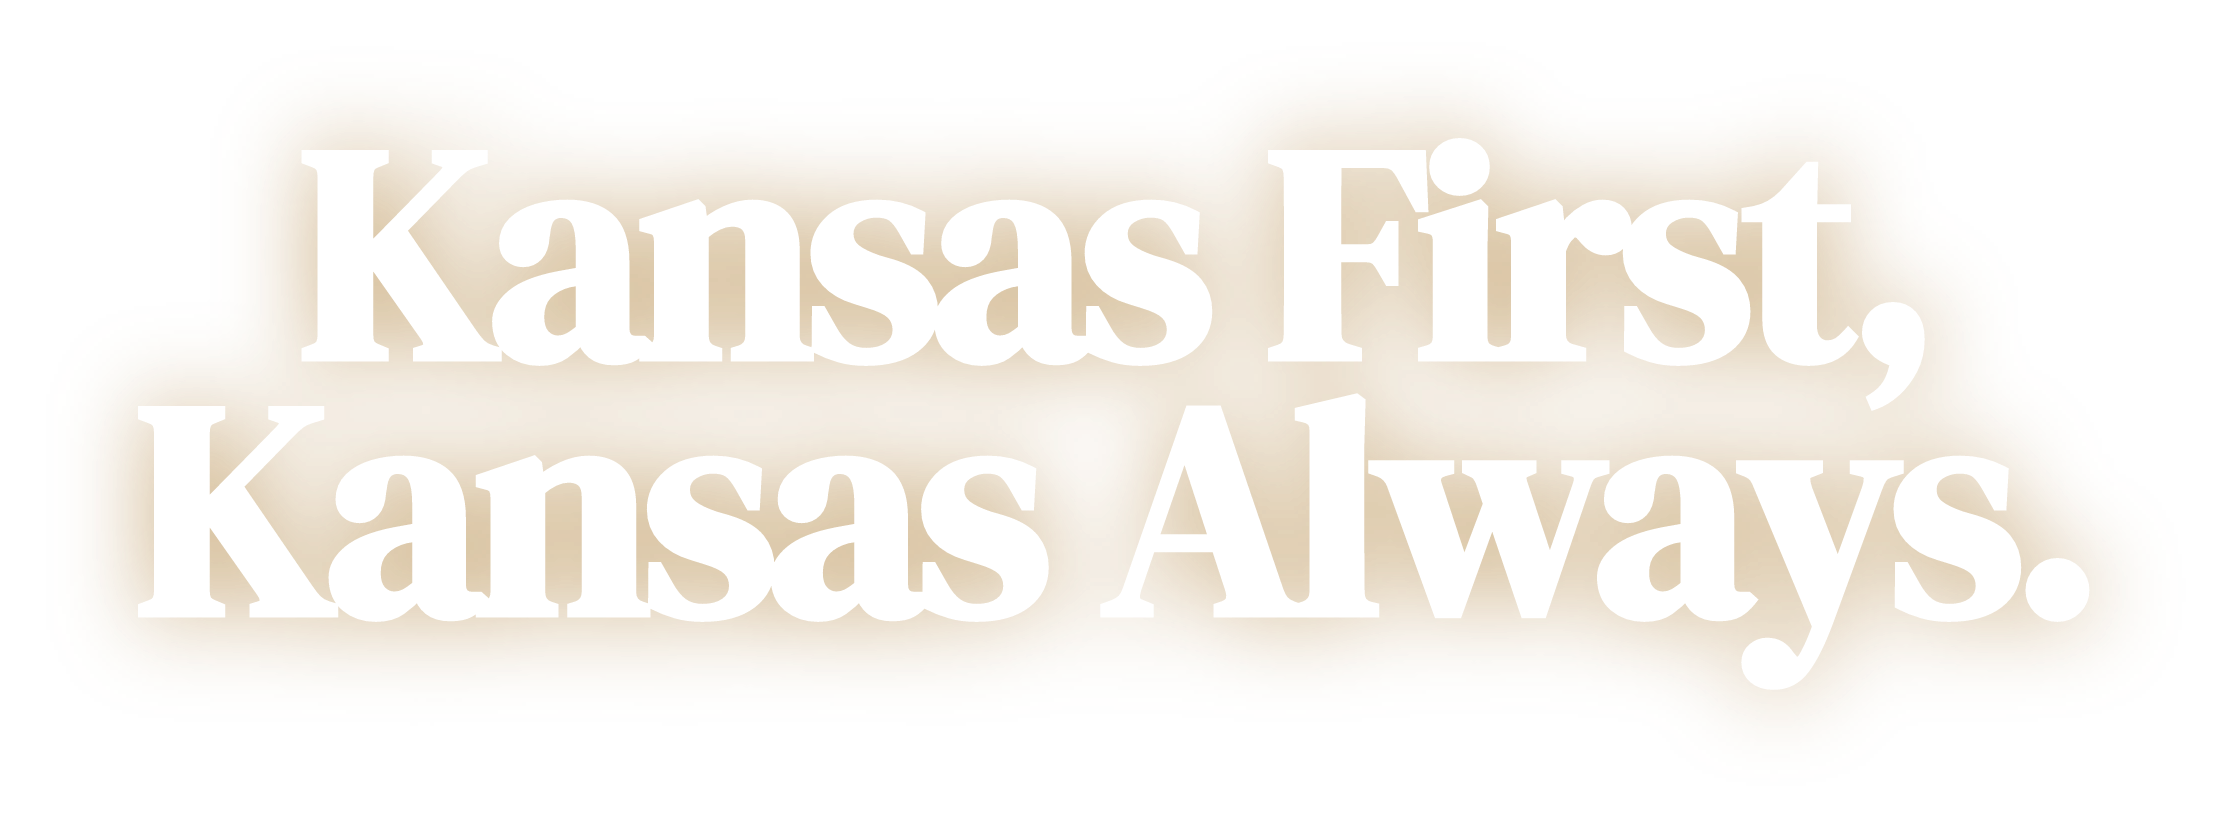 Kansas First, Kansas Always.